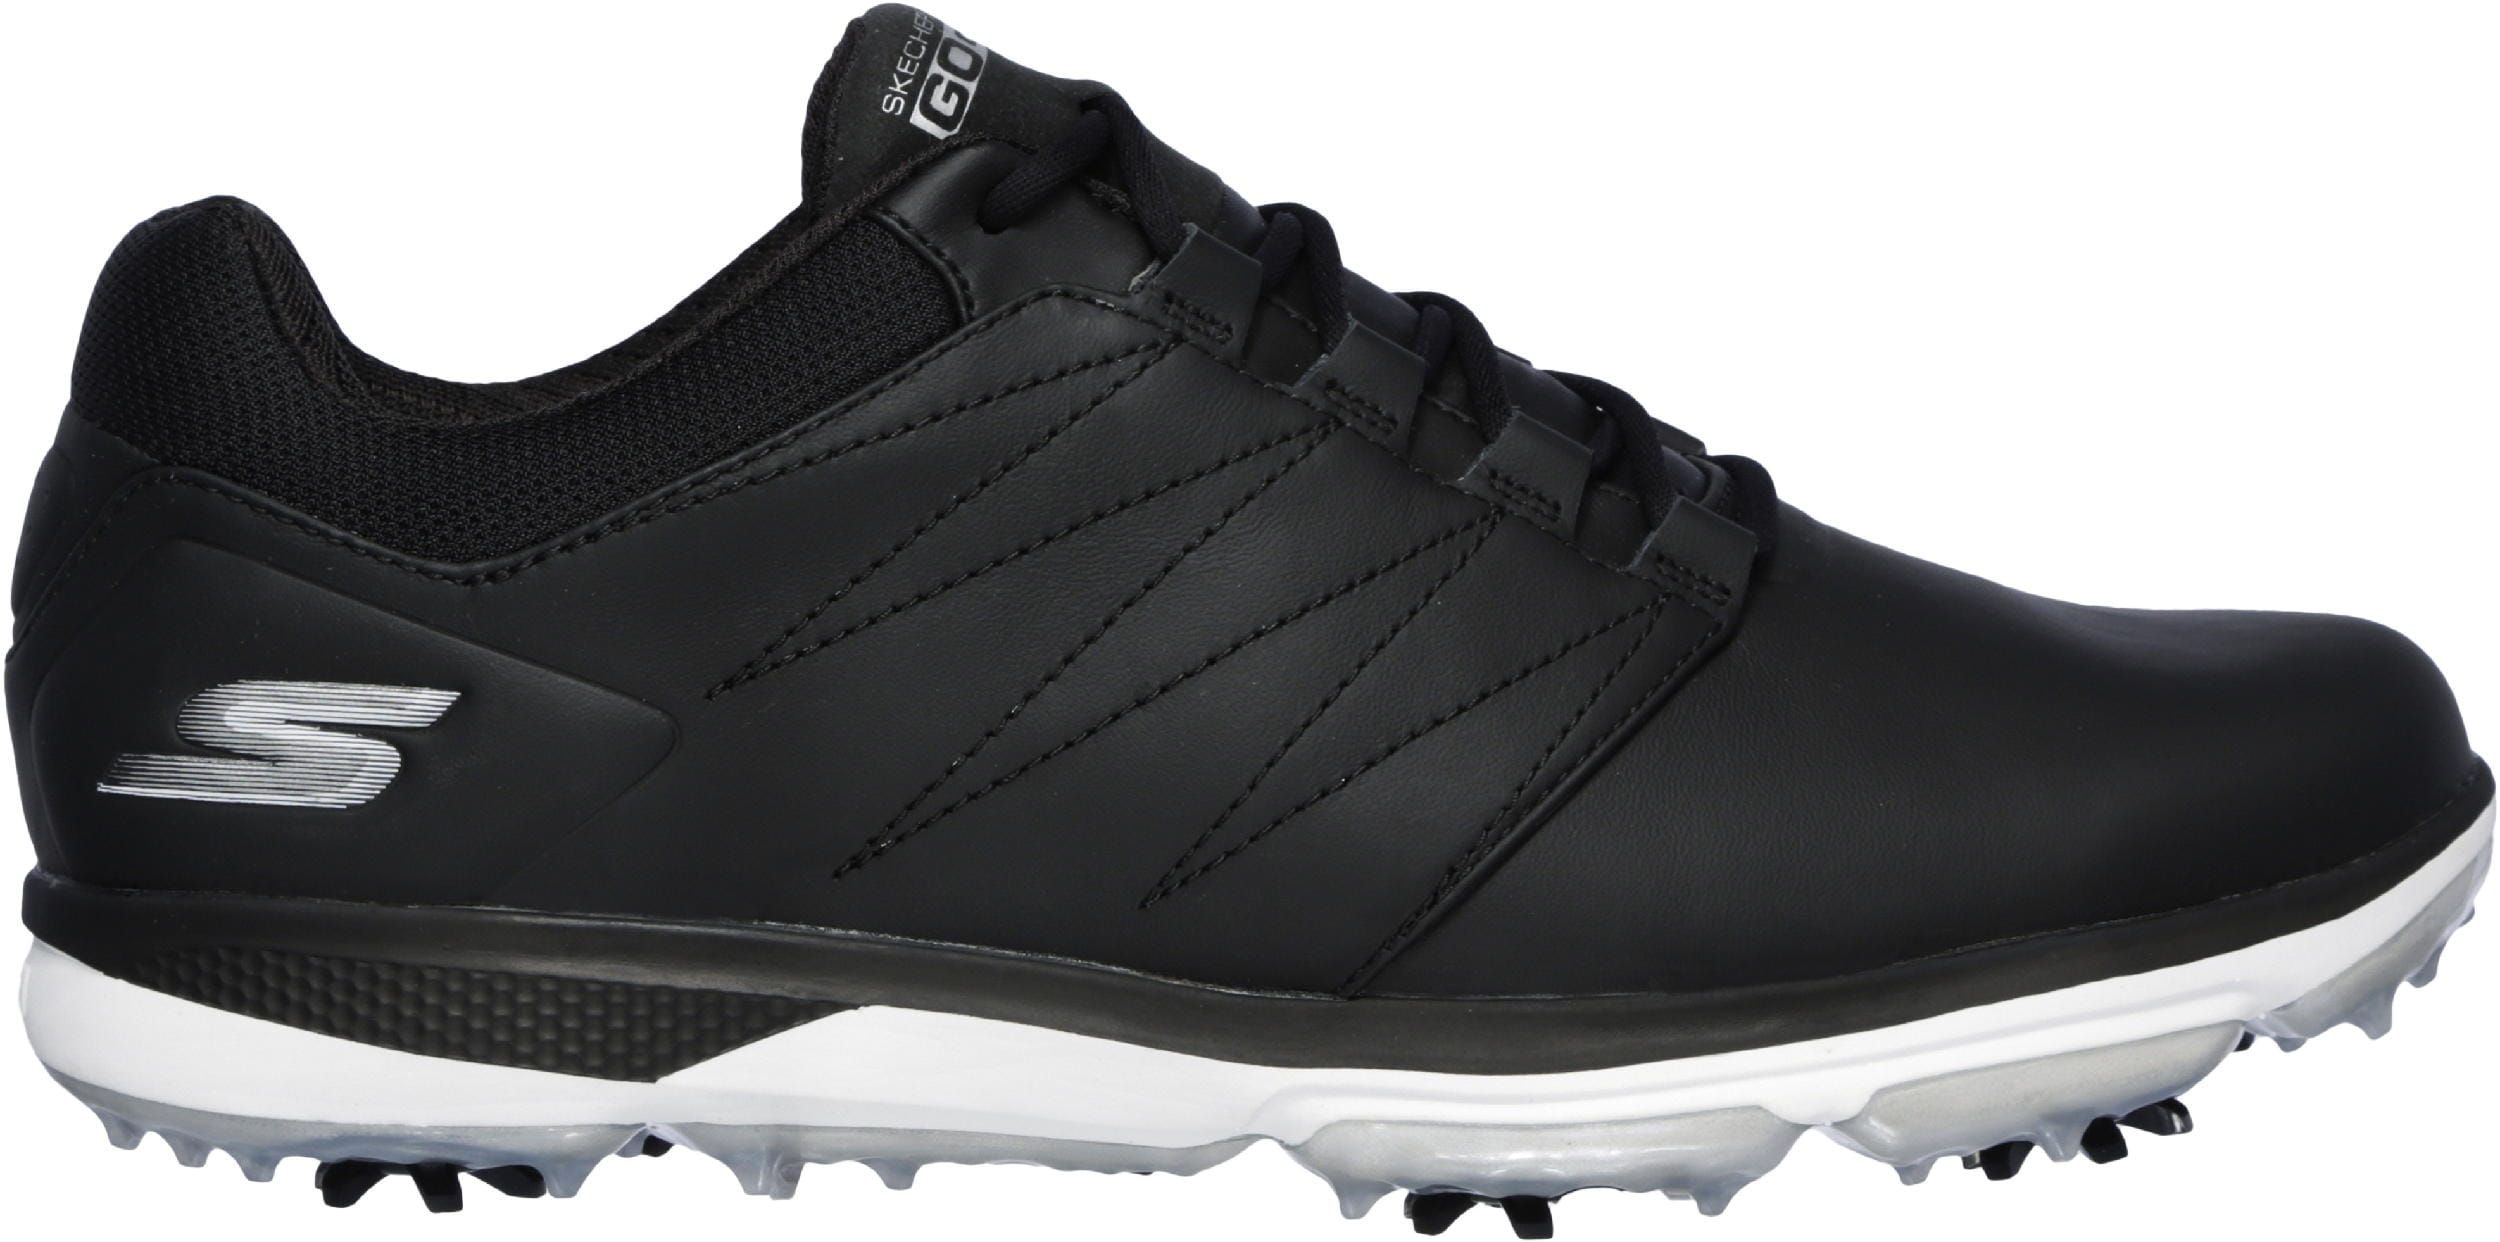 Skechers Go Golf Pro V 4 Golfschuh, black/white